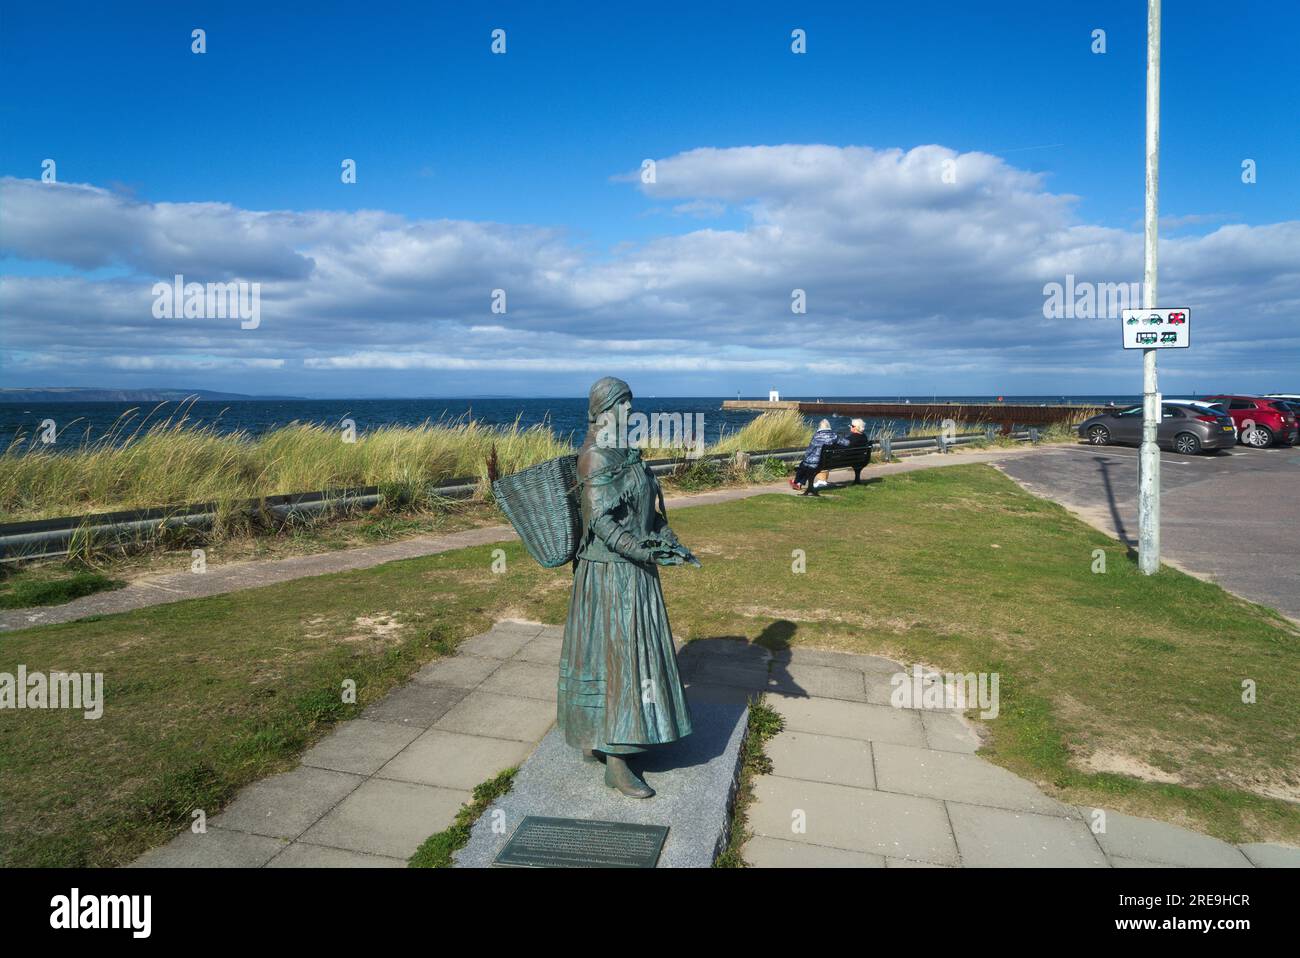 Statue historique de la femme Fisher, mémorial, au port de Nairn. Deux dames plus âgées sur le siège regardant la mer. Nairn, Inverness, Highlands, Écosse, Royaume-Uni Banque D'Images